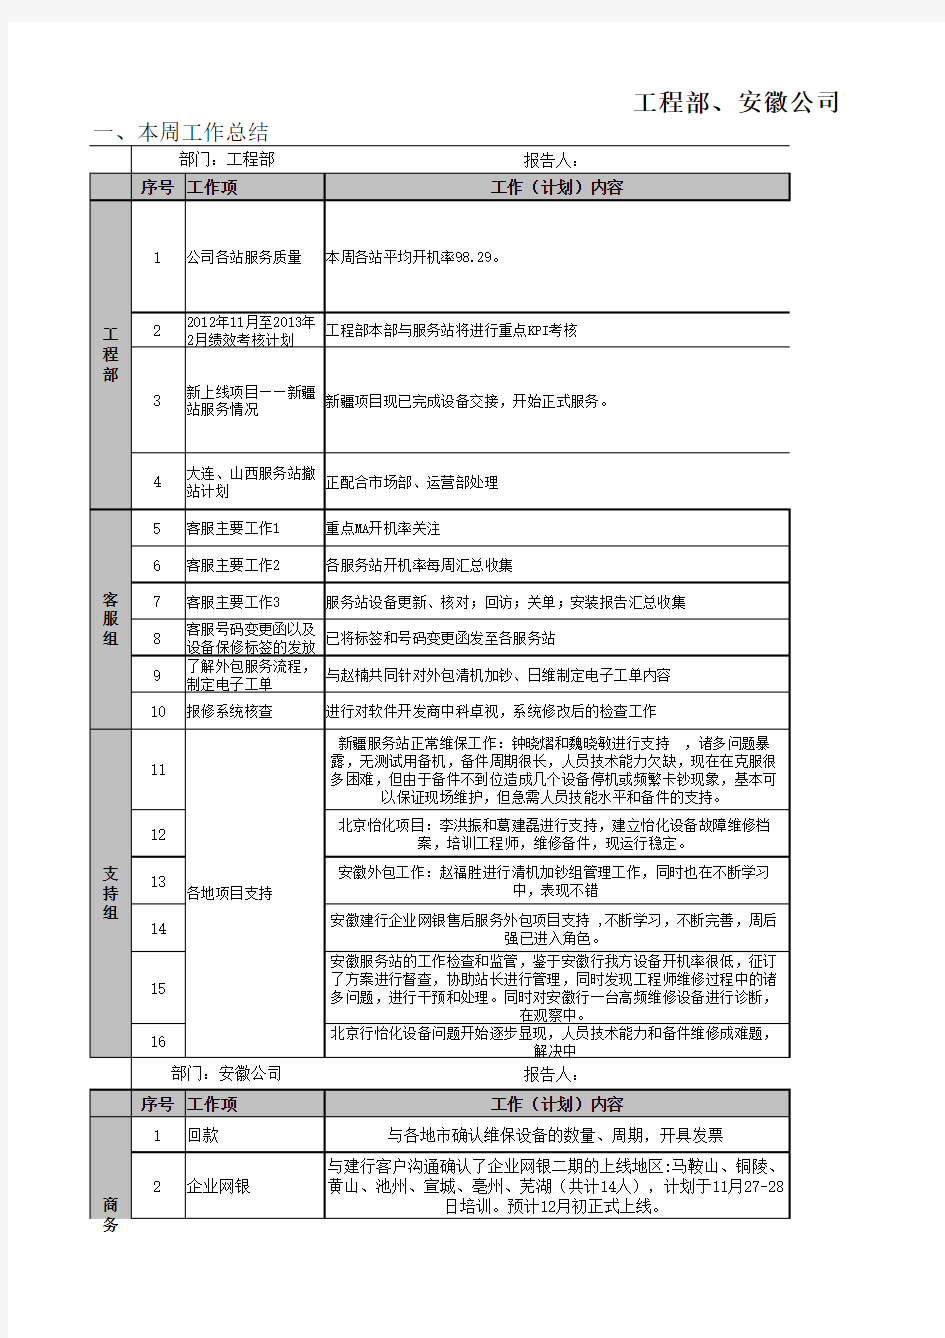 工程部、安徽公司团队工作周报(周小结)汇总表(2012.11.23)